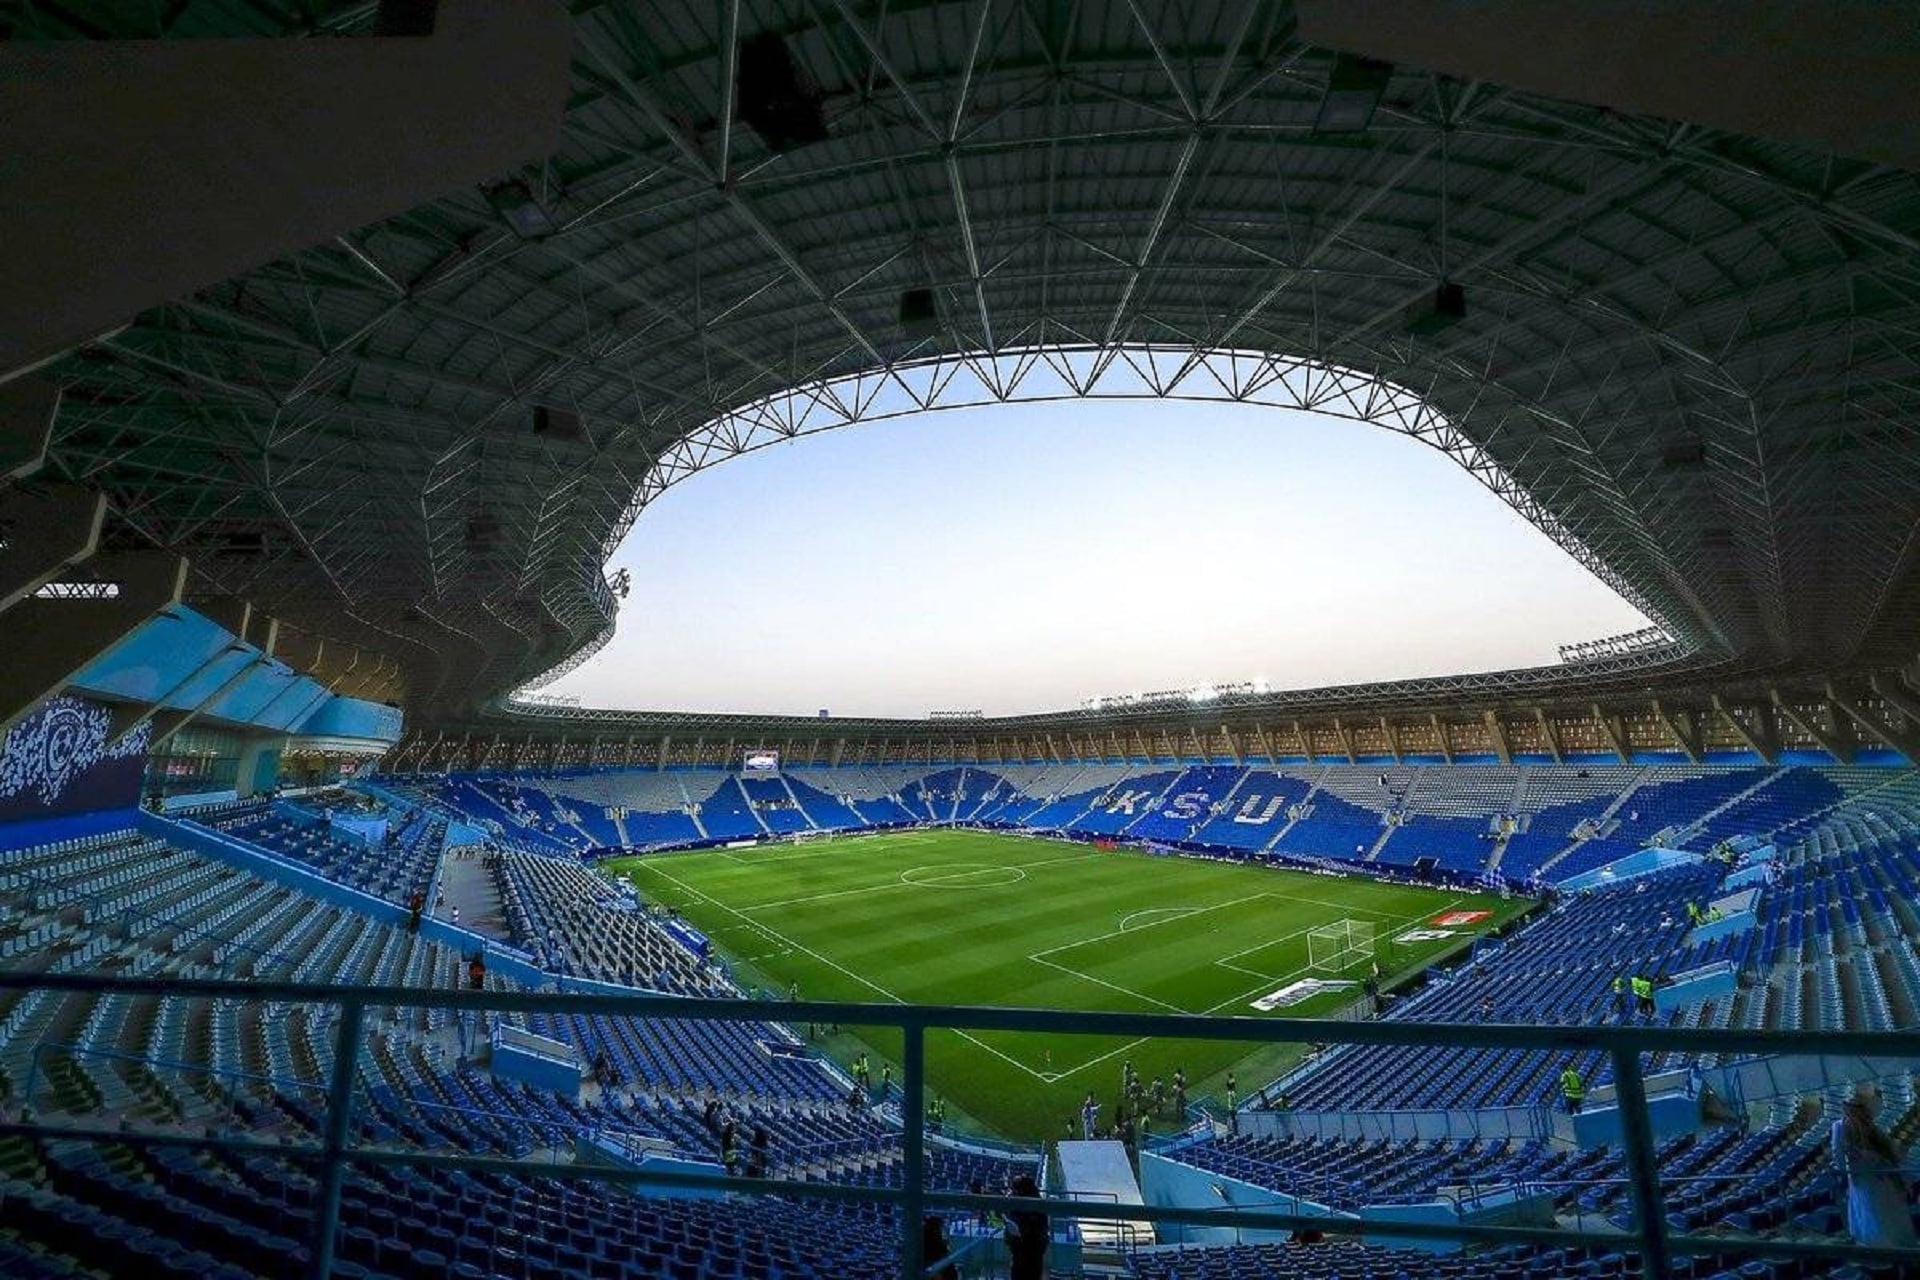 جامعة الملك سعود تعلن رغبتها في استثمار الملعب